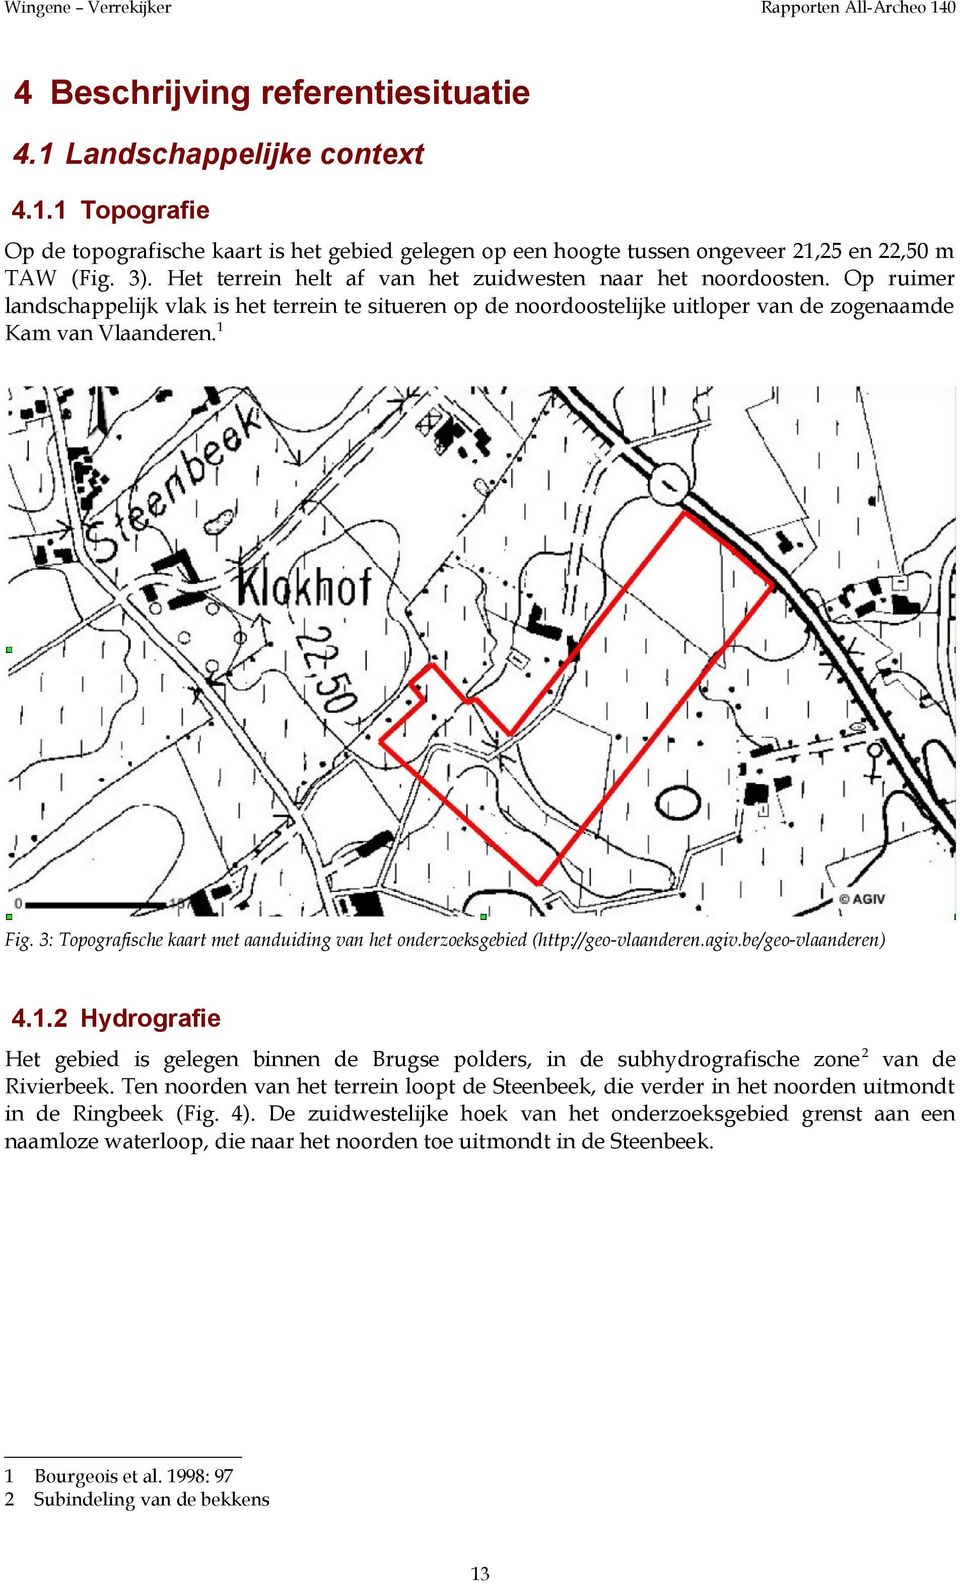 3: Topografische kaart met aanduiding van het onderzoeksgebied (http://geo-vlaanderen.agiv.be/geo-vlaanderen) 4.1.